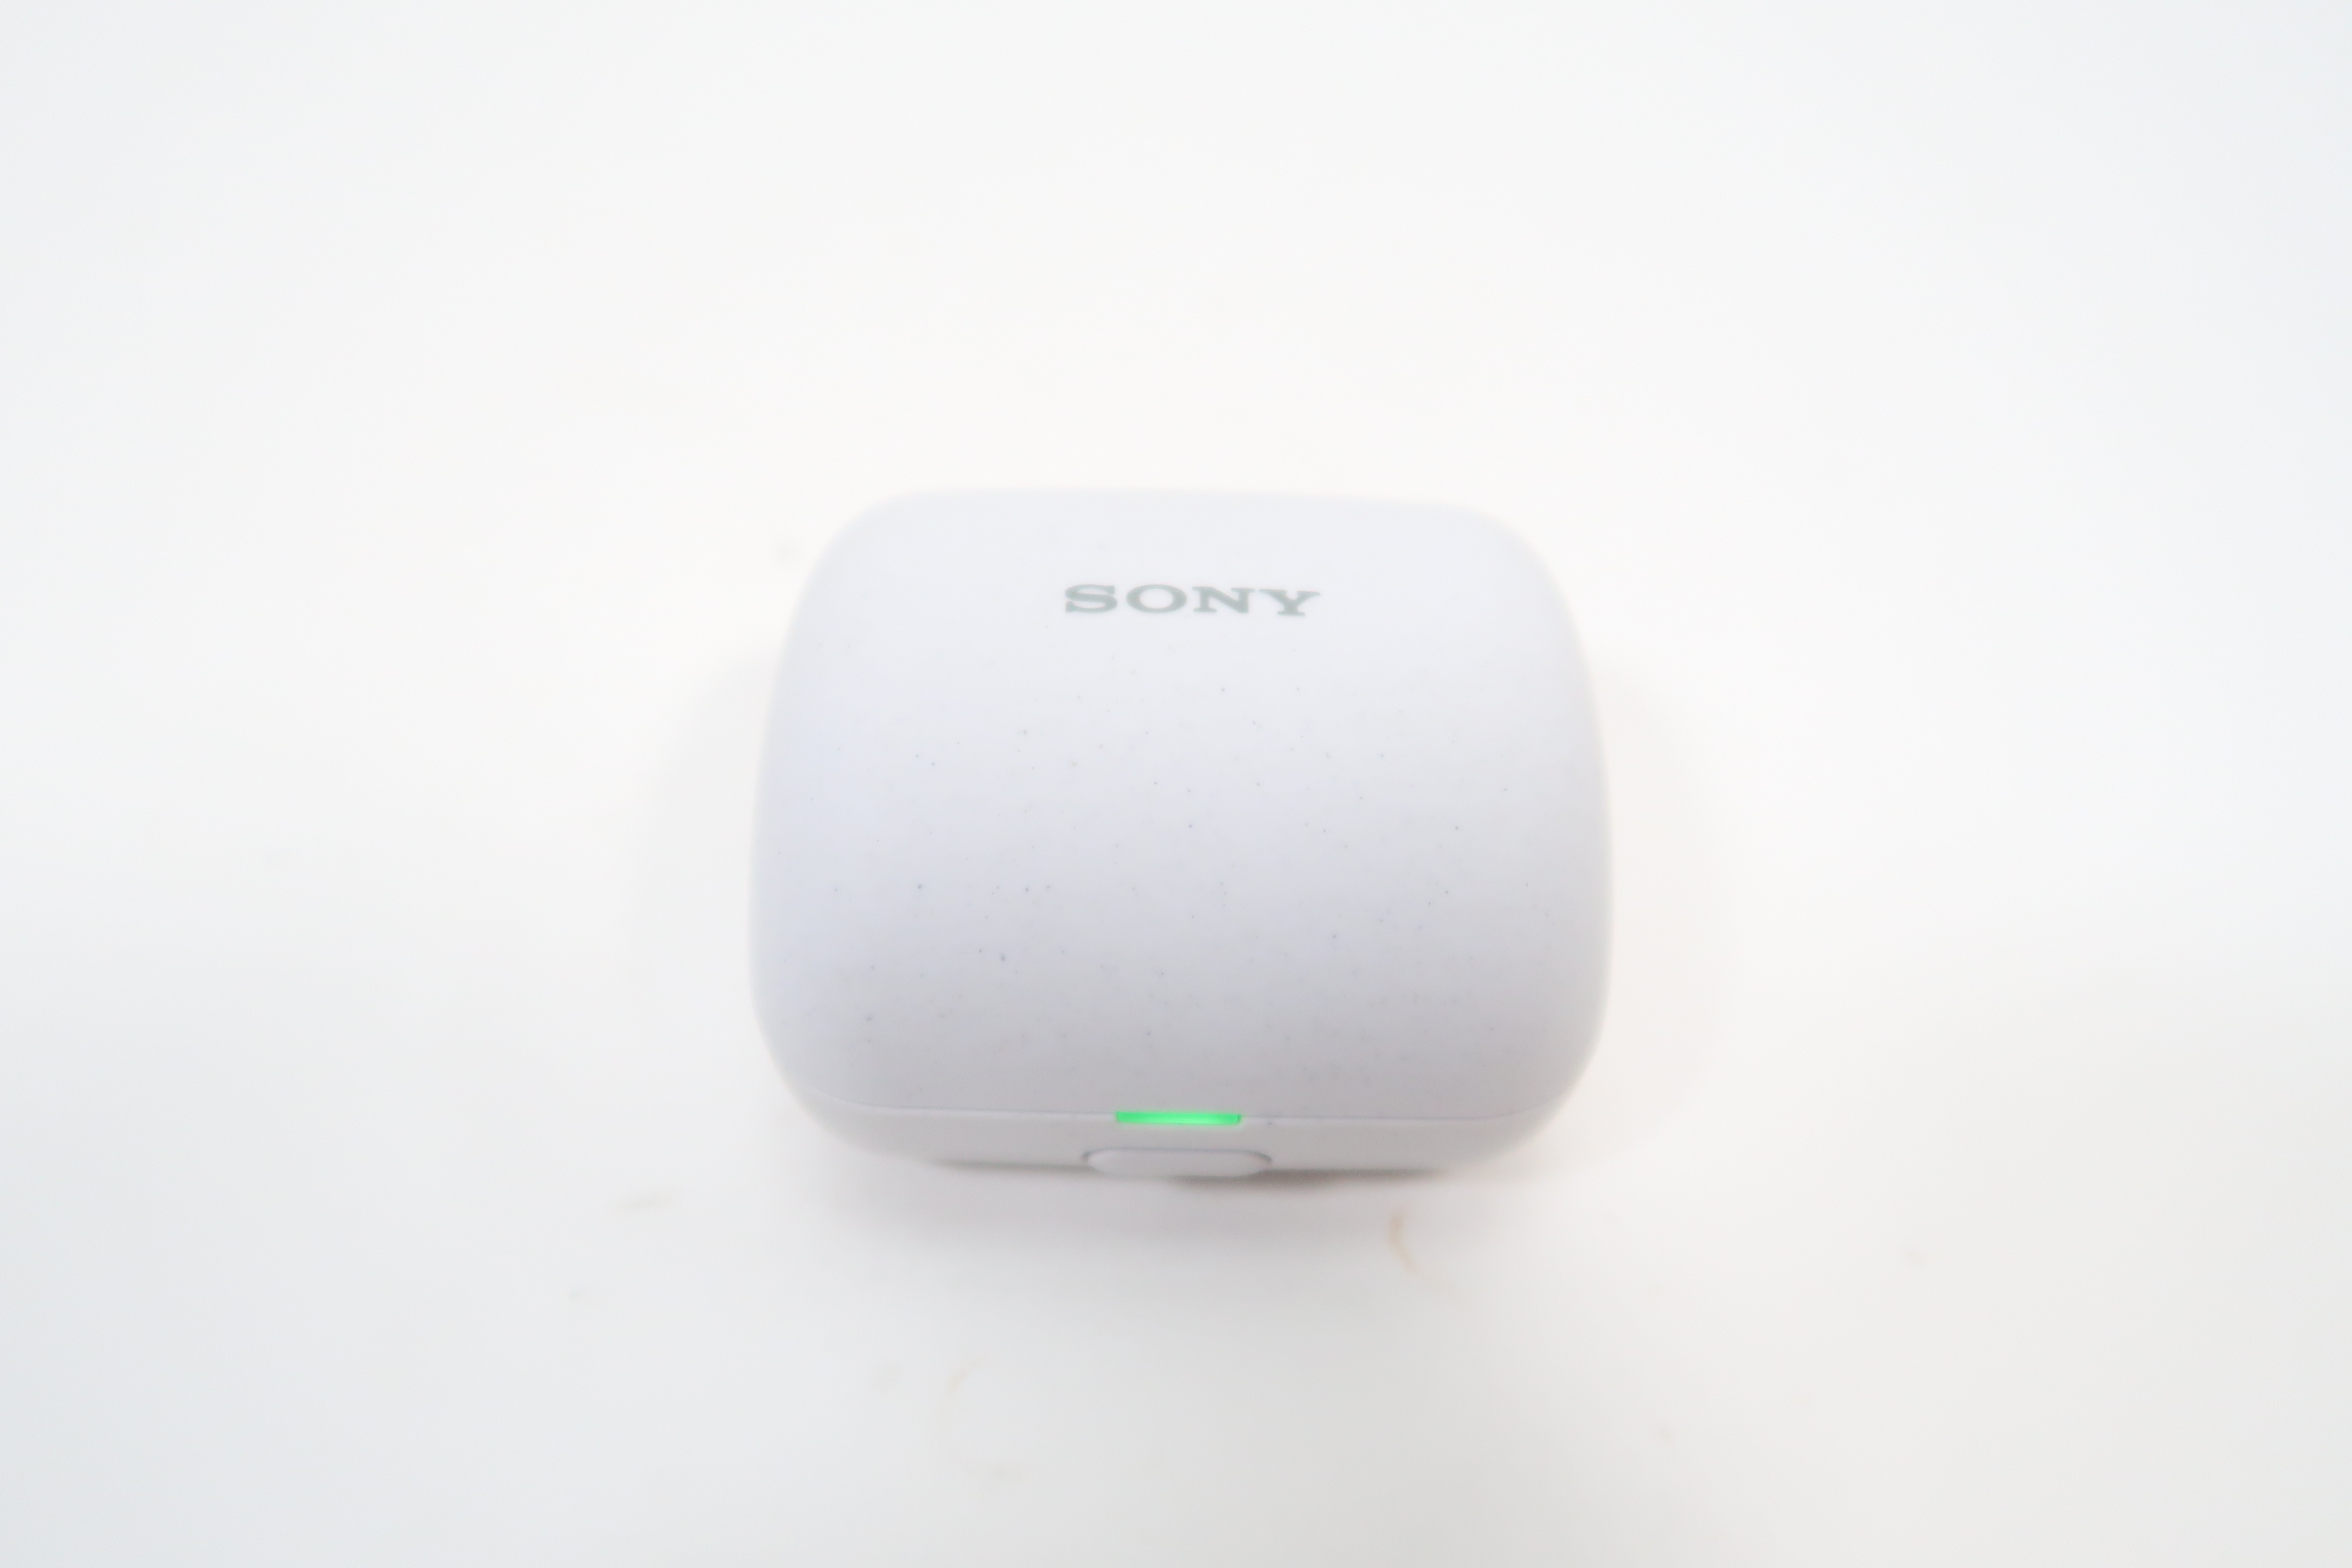 Sony WF-L900 LinkBuds True Wireless Open Earbuds (White)